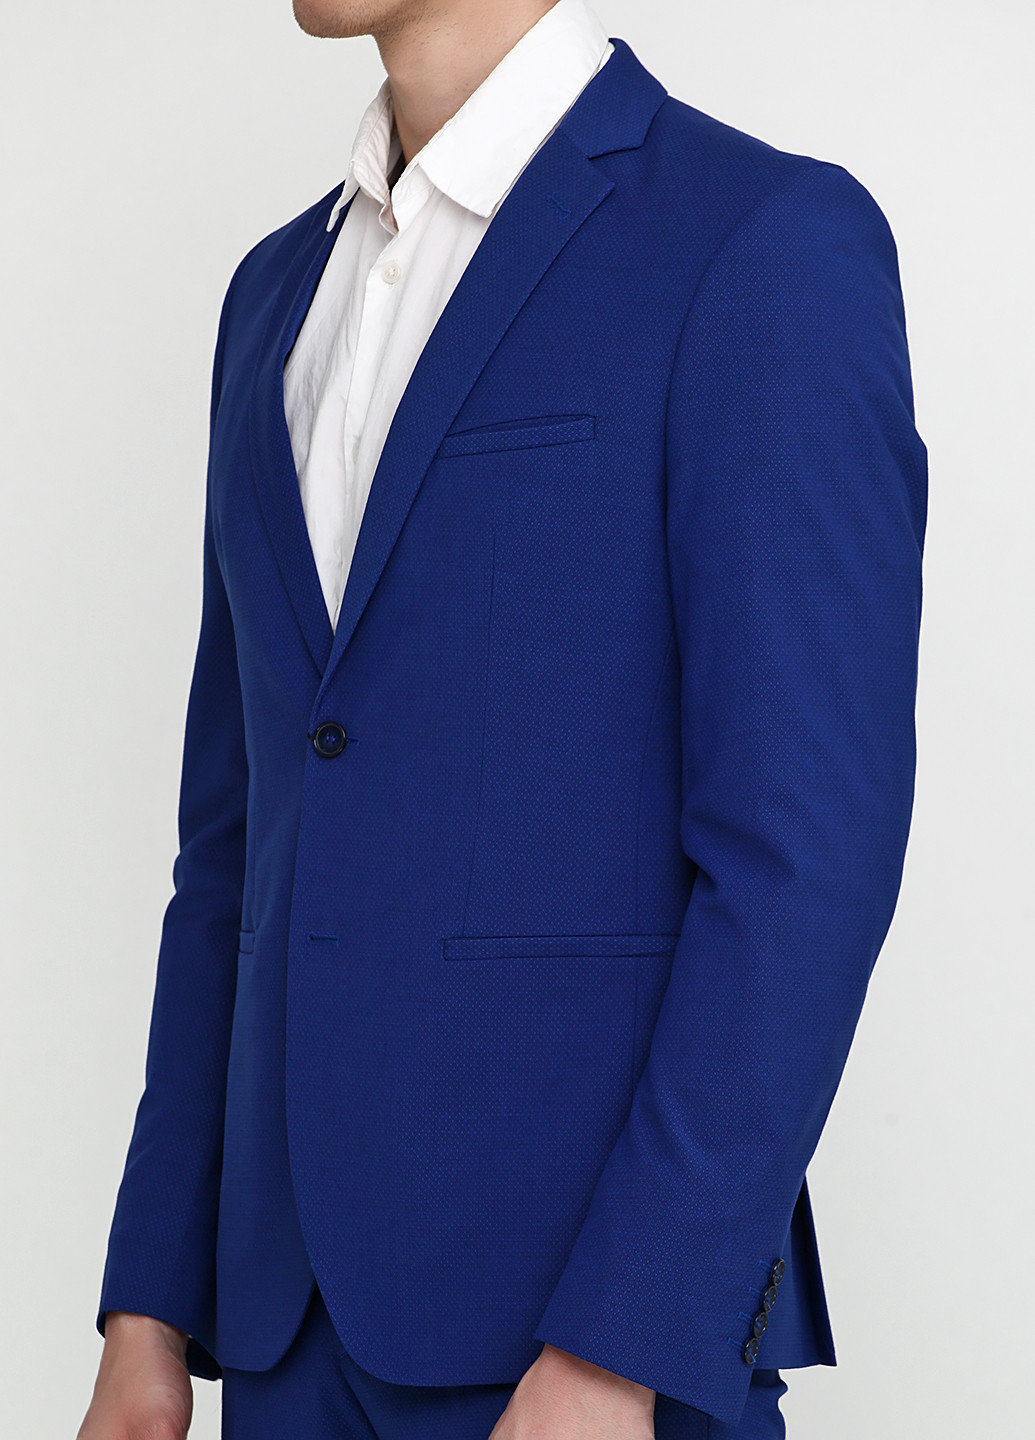 Синий демисезонный костюм (пиджак, брюки) брючный Миа-Стиль